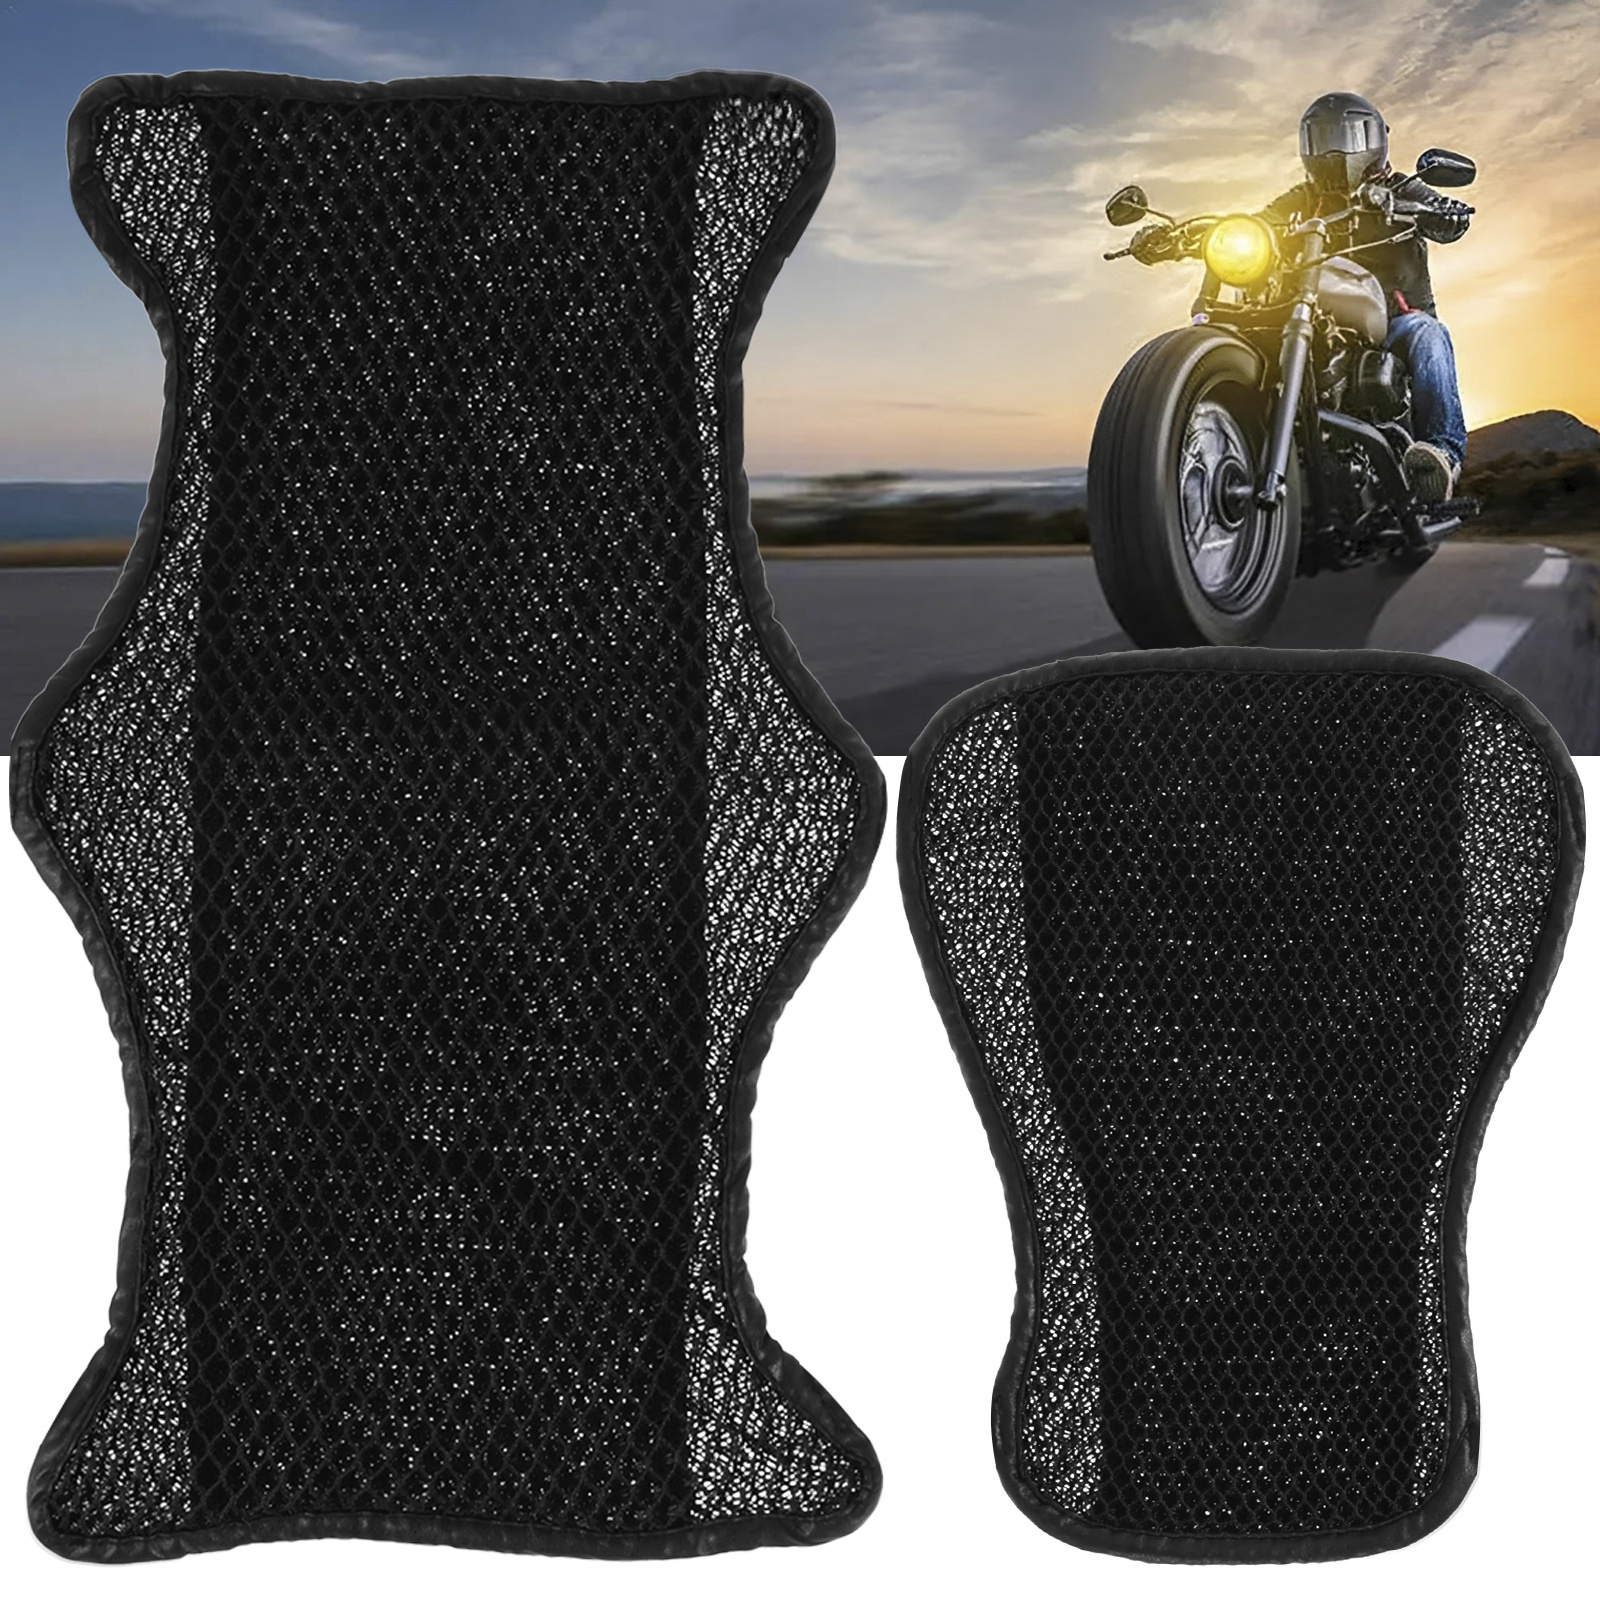 Motor Sitzkissen Atmungsaktive Luftkühlung Motorrad Sitzbezug Mit  Verstellbarem Elastischem Band Anti-Rutsch Motorrad Pad Für Motorrad